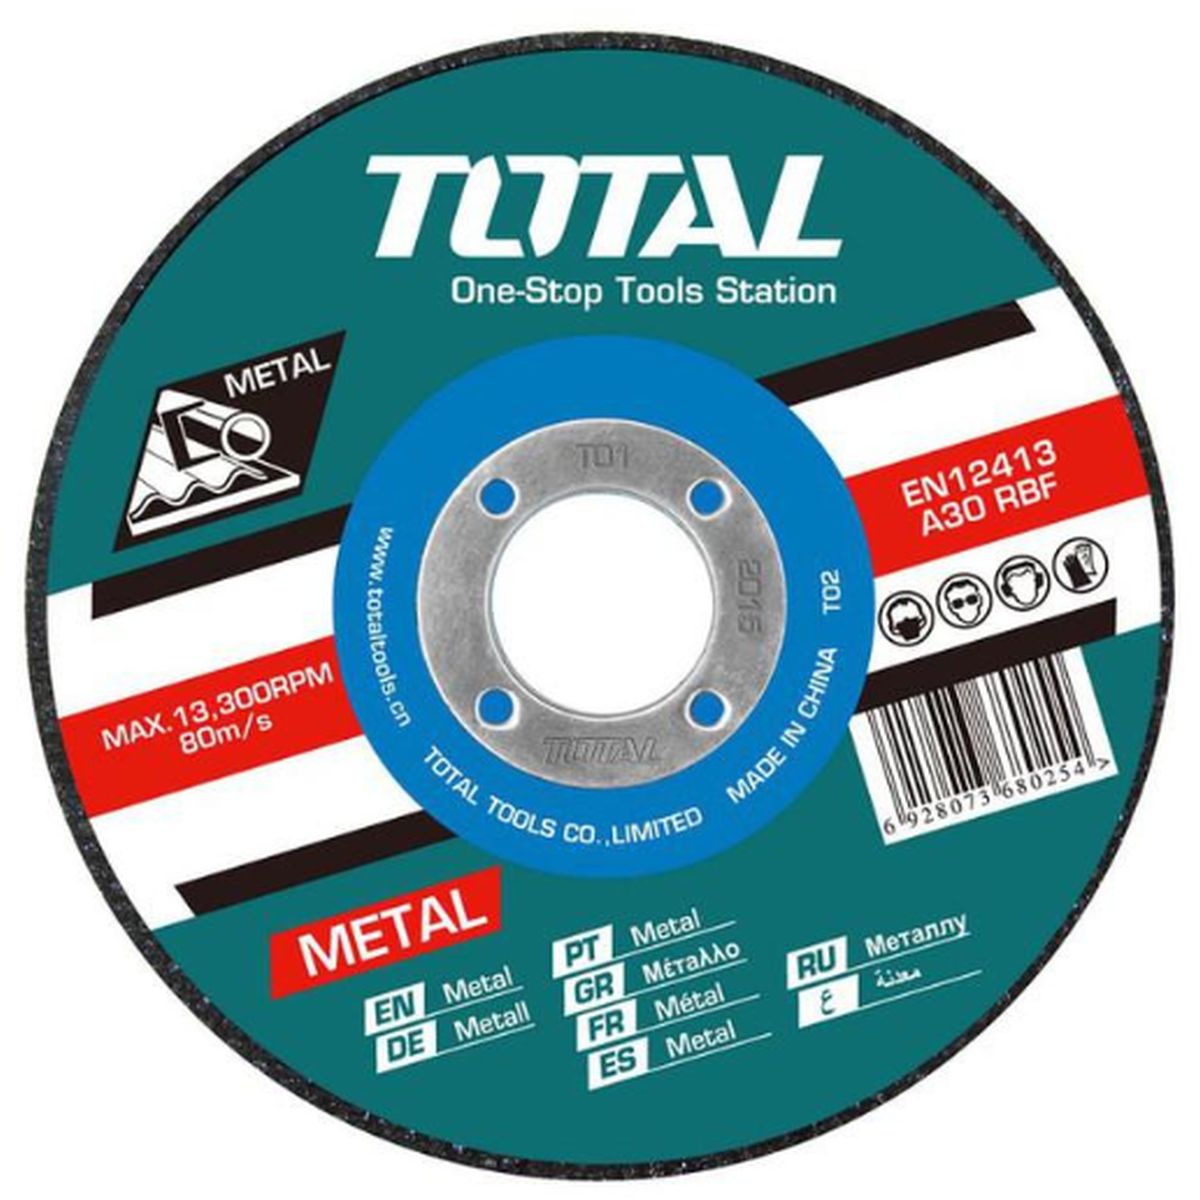 Total δίσκος κοπής ΙΝΟΧ - ΜΕΤΑΛΛΟΥ 230 Χ 1.9mm (TAC2212303)